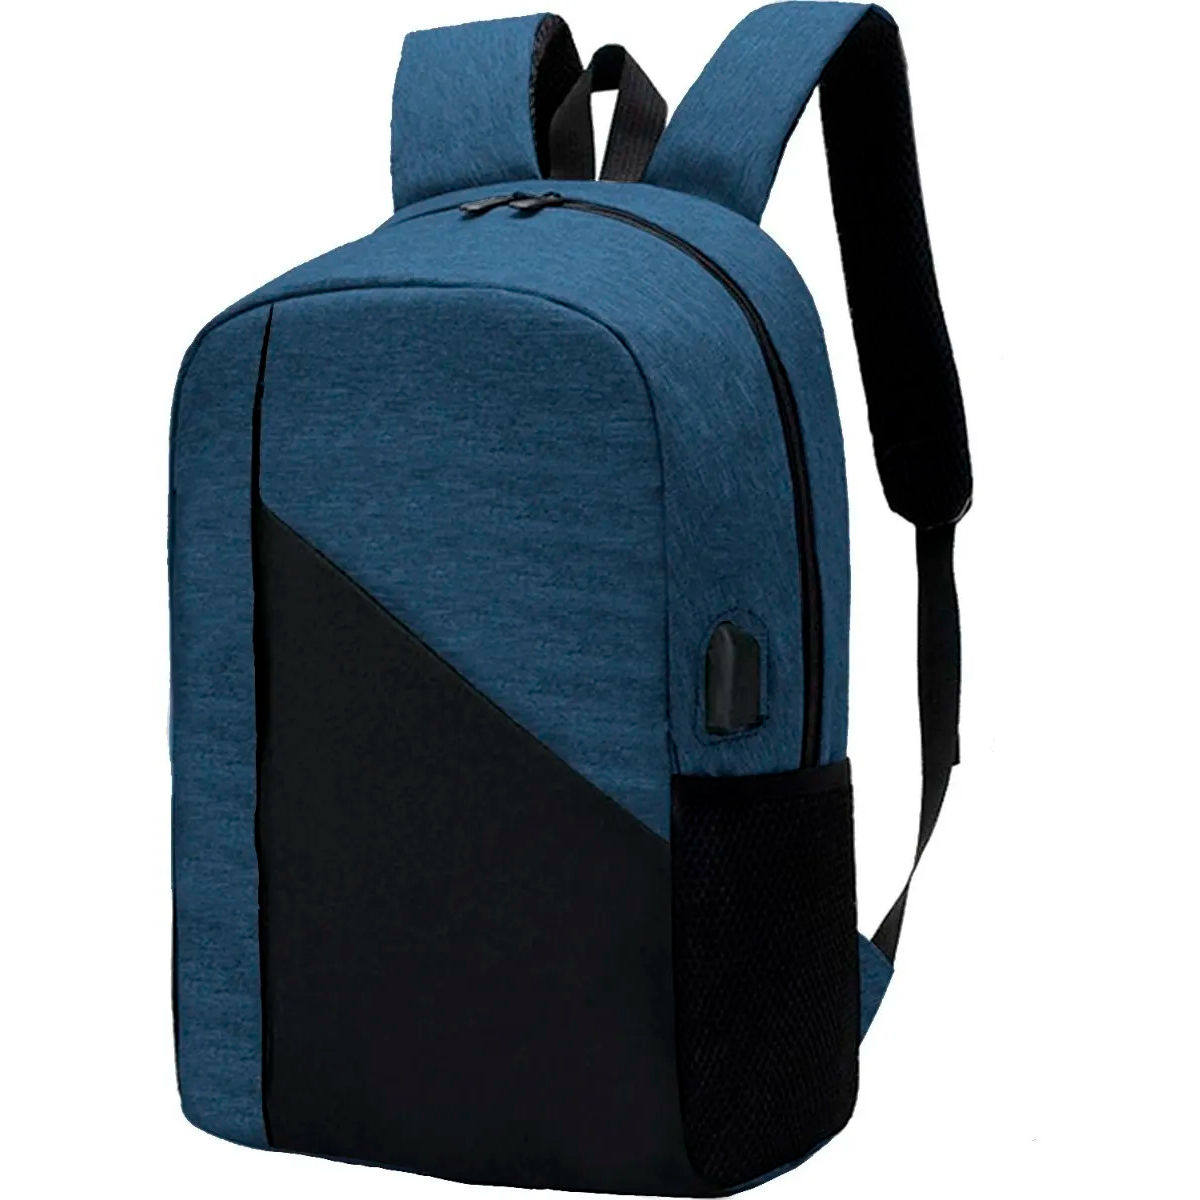 Plegable, sin ruido y en cinco colores: así es el carro para mochilas  escolares más vendido en , Escaparate: compras y ofertas